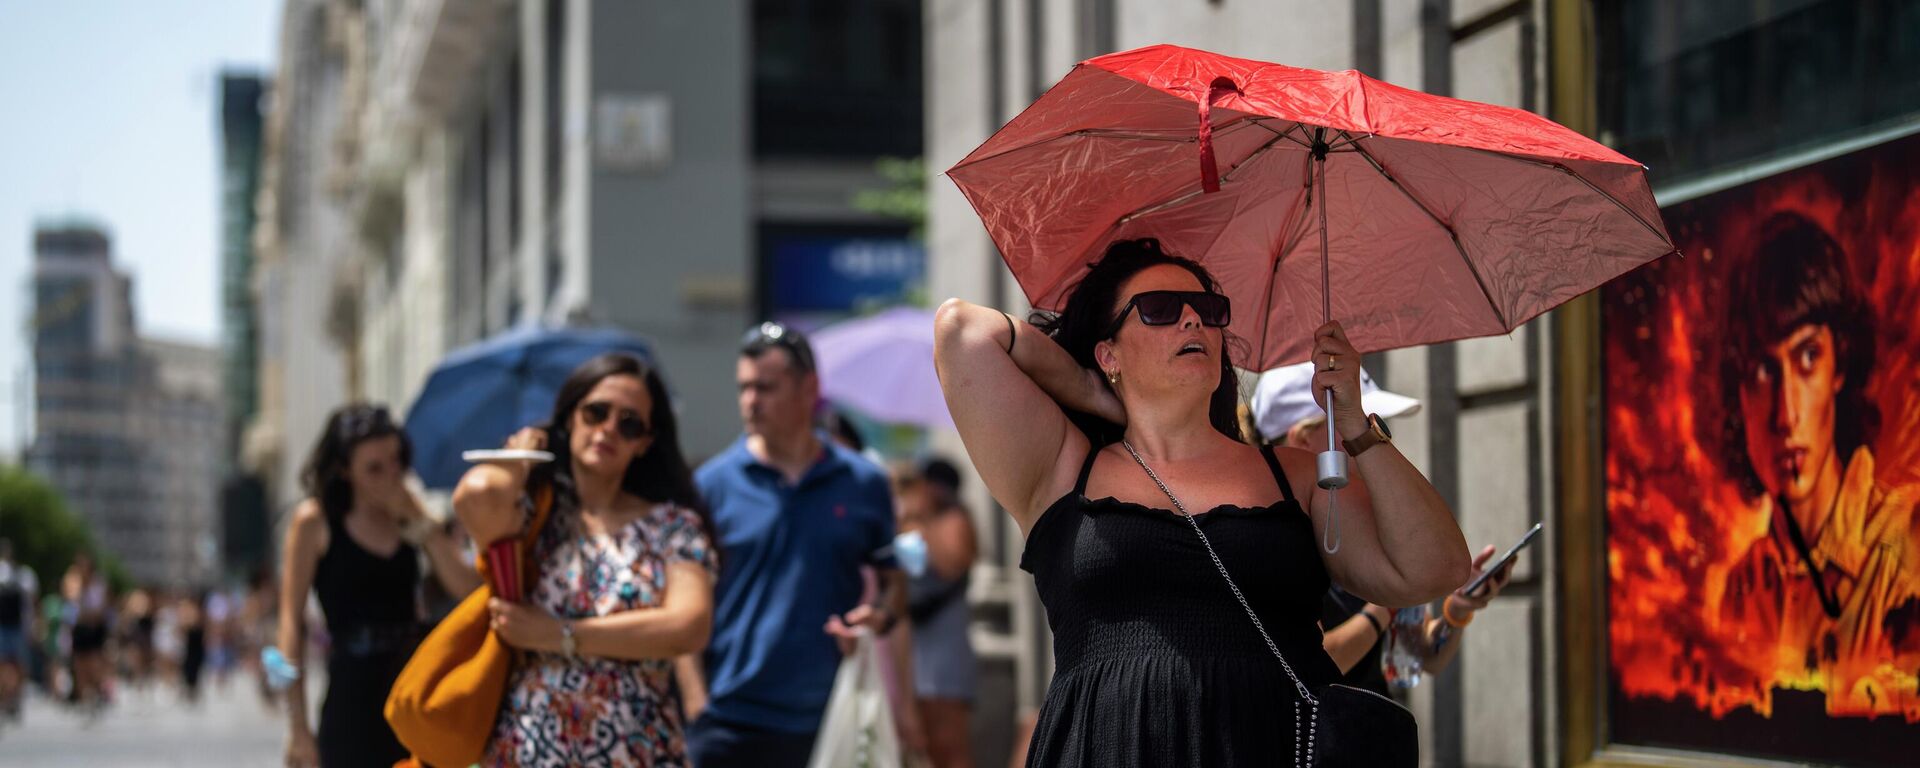 امرأة تحمل مظلة للاحتماء من أشعة الشمس خلال يوم مشمس حار في مدريد، إسبانيا، 18 يوليو 2022. - سبوتنيك عربي, 1920, 24.02.2023